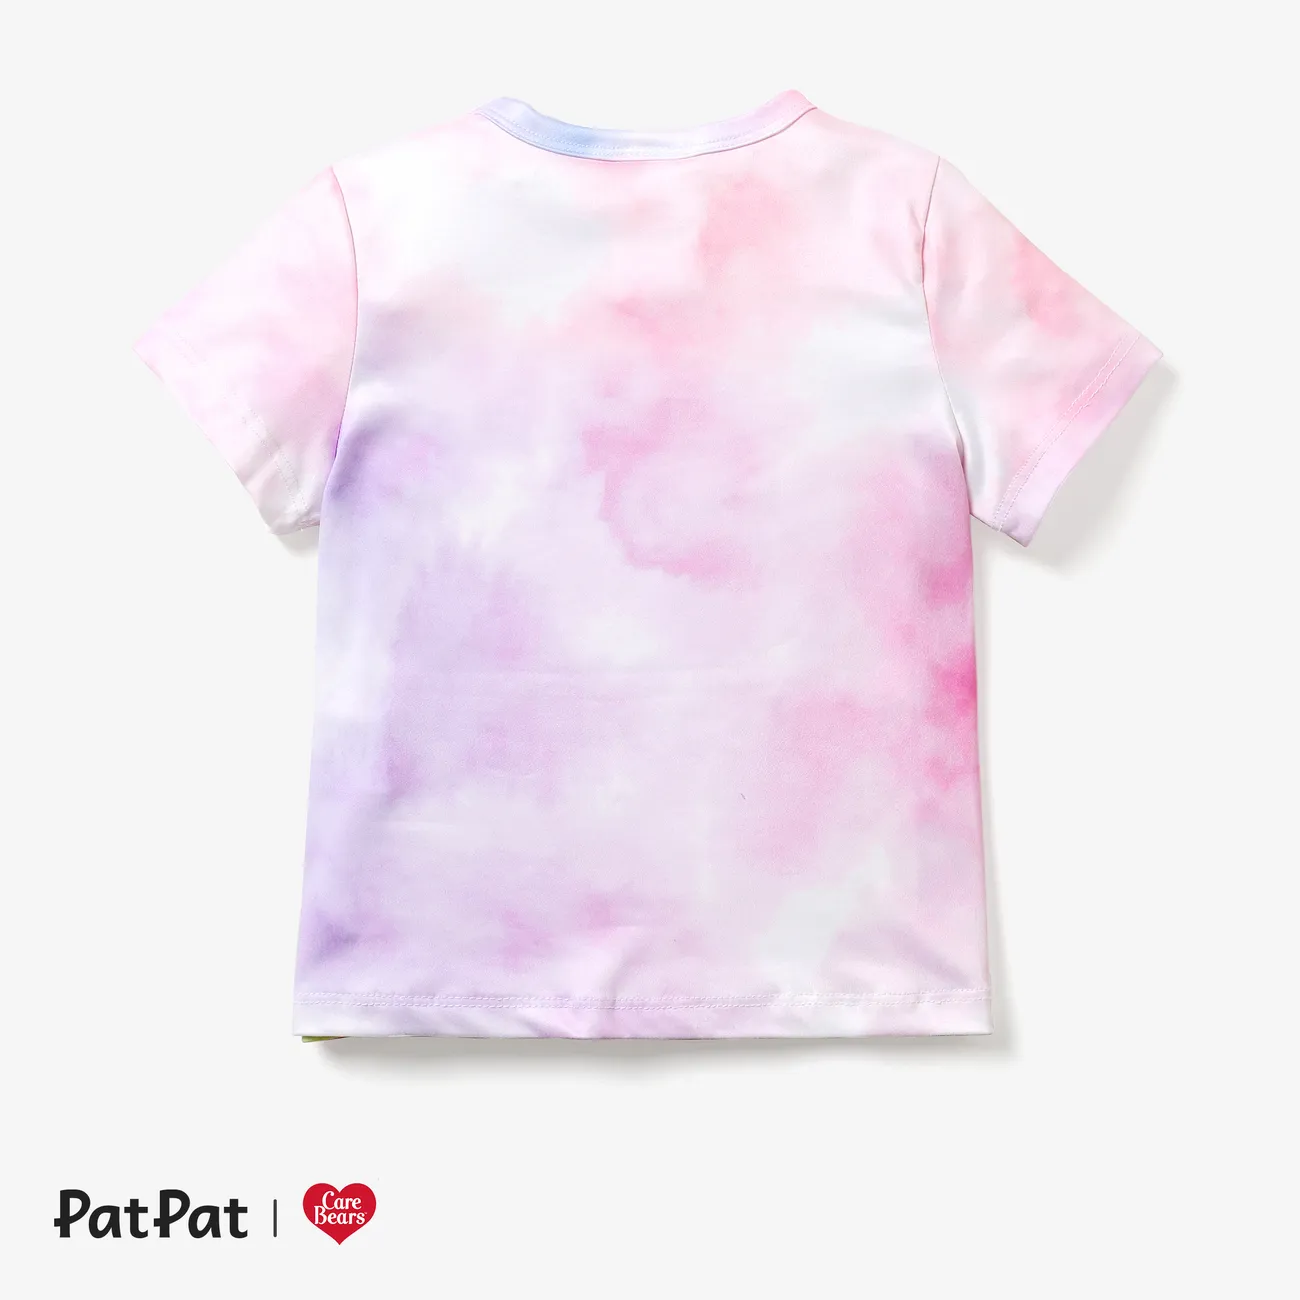 Gli Orsetti del Cuore Pasqua Bambino piccolo Unisex Infantile Manica corta Maglietta Rosa big image 1